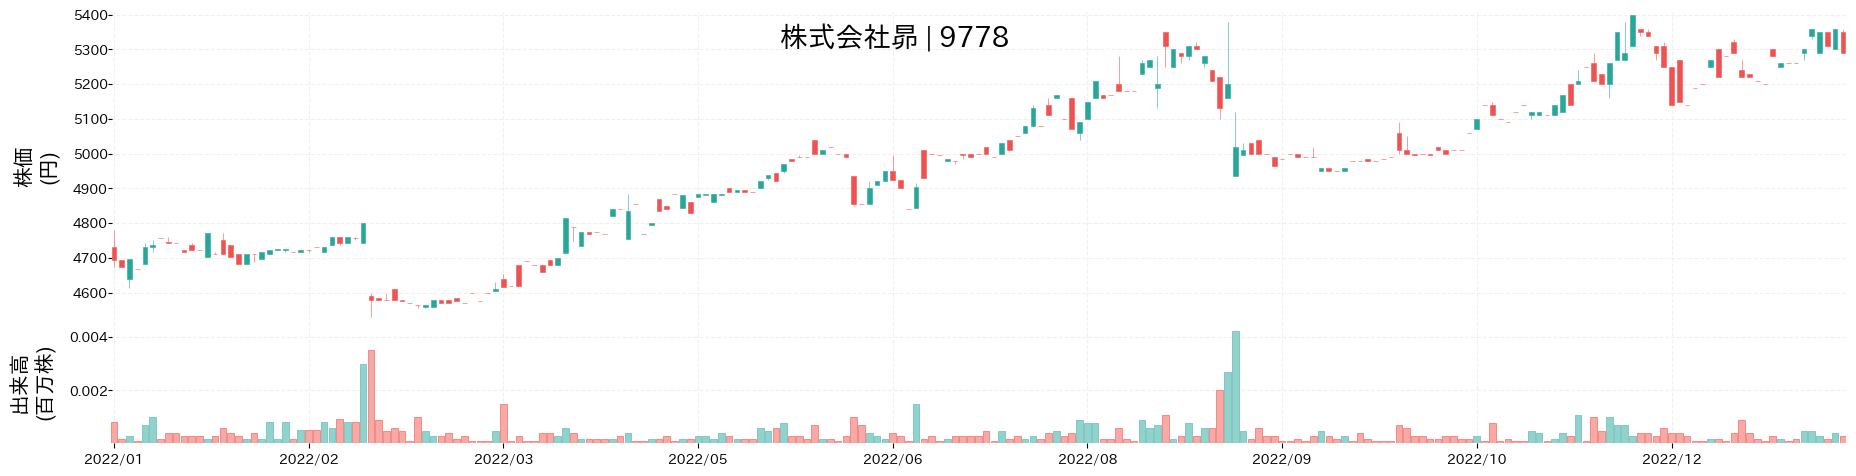 昴の株価推移(2022)